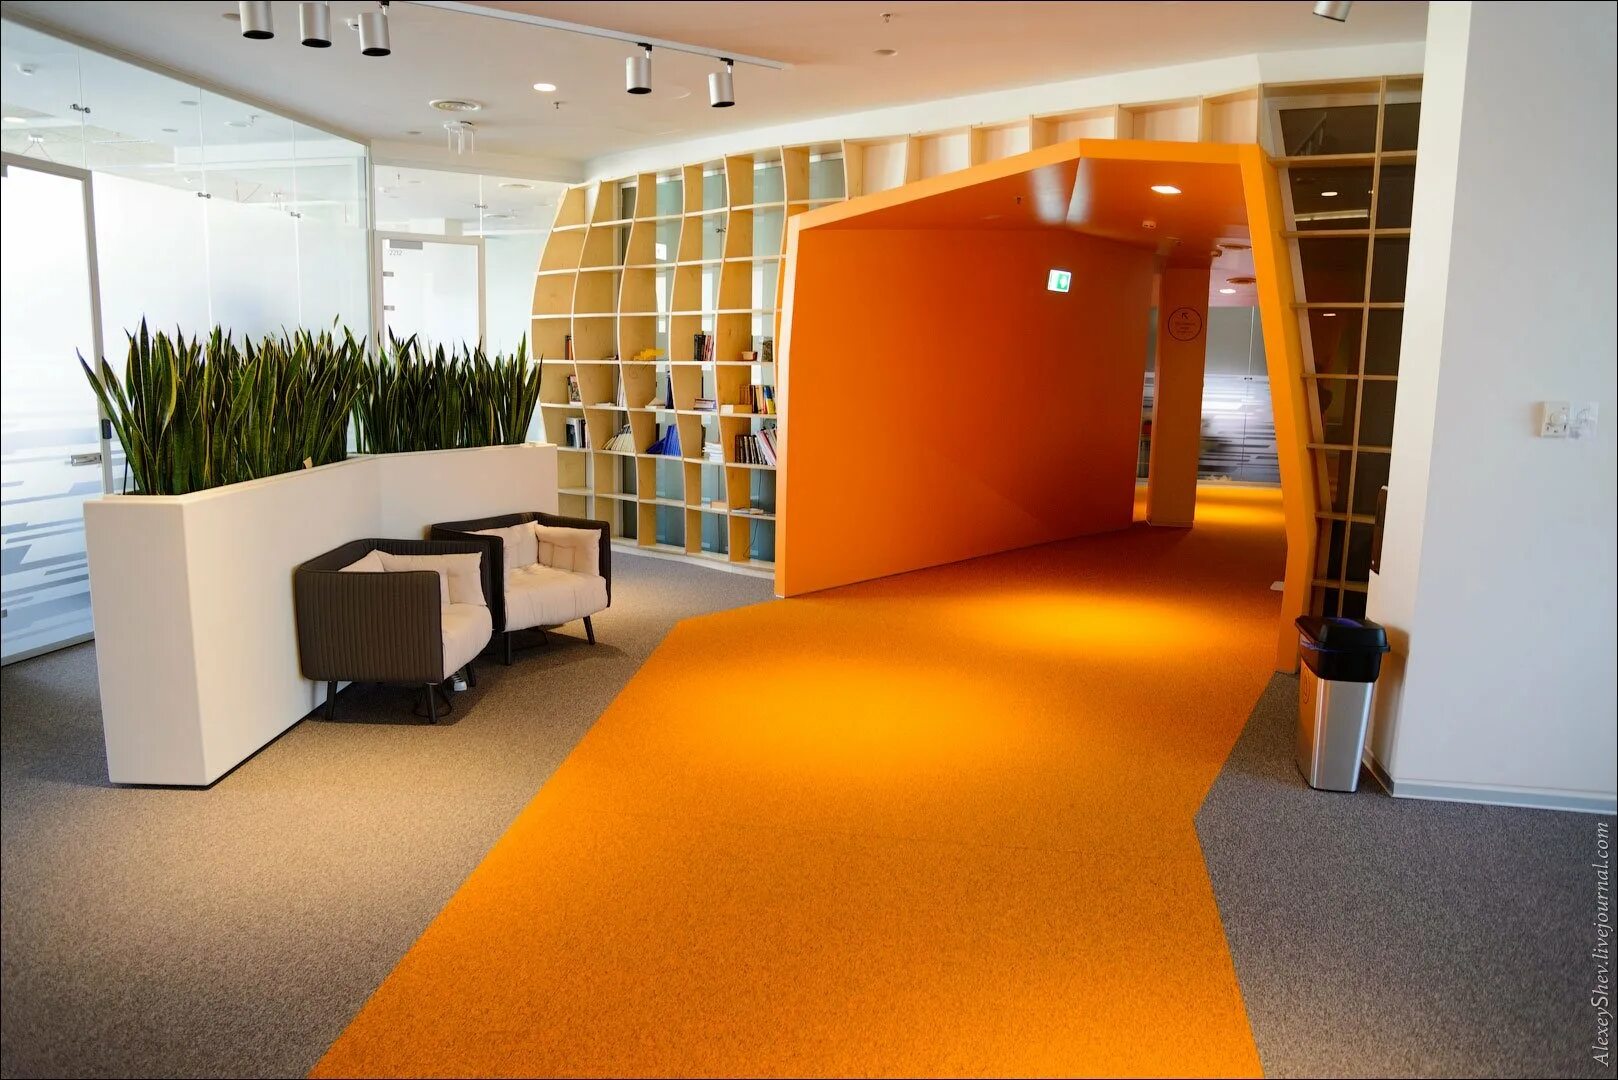 Компания квартира. Офис Яндекс. Оранжевые стены в офисе. Офис Яндекса изнутри. Офис компании Яндекс.